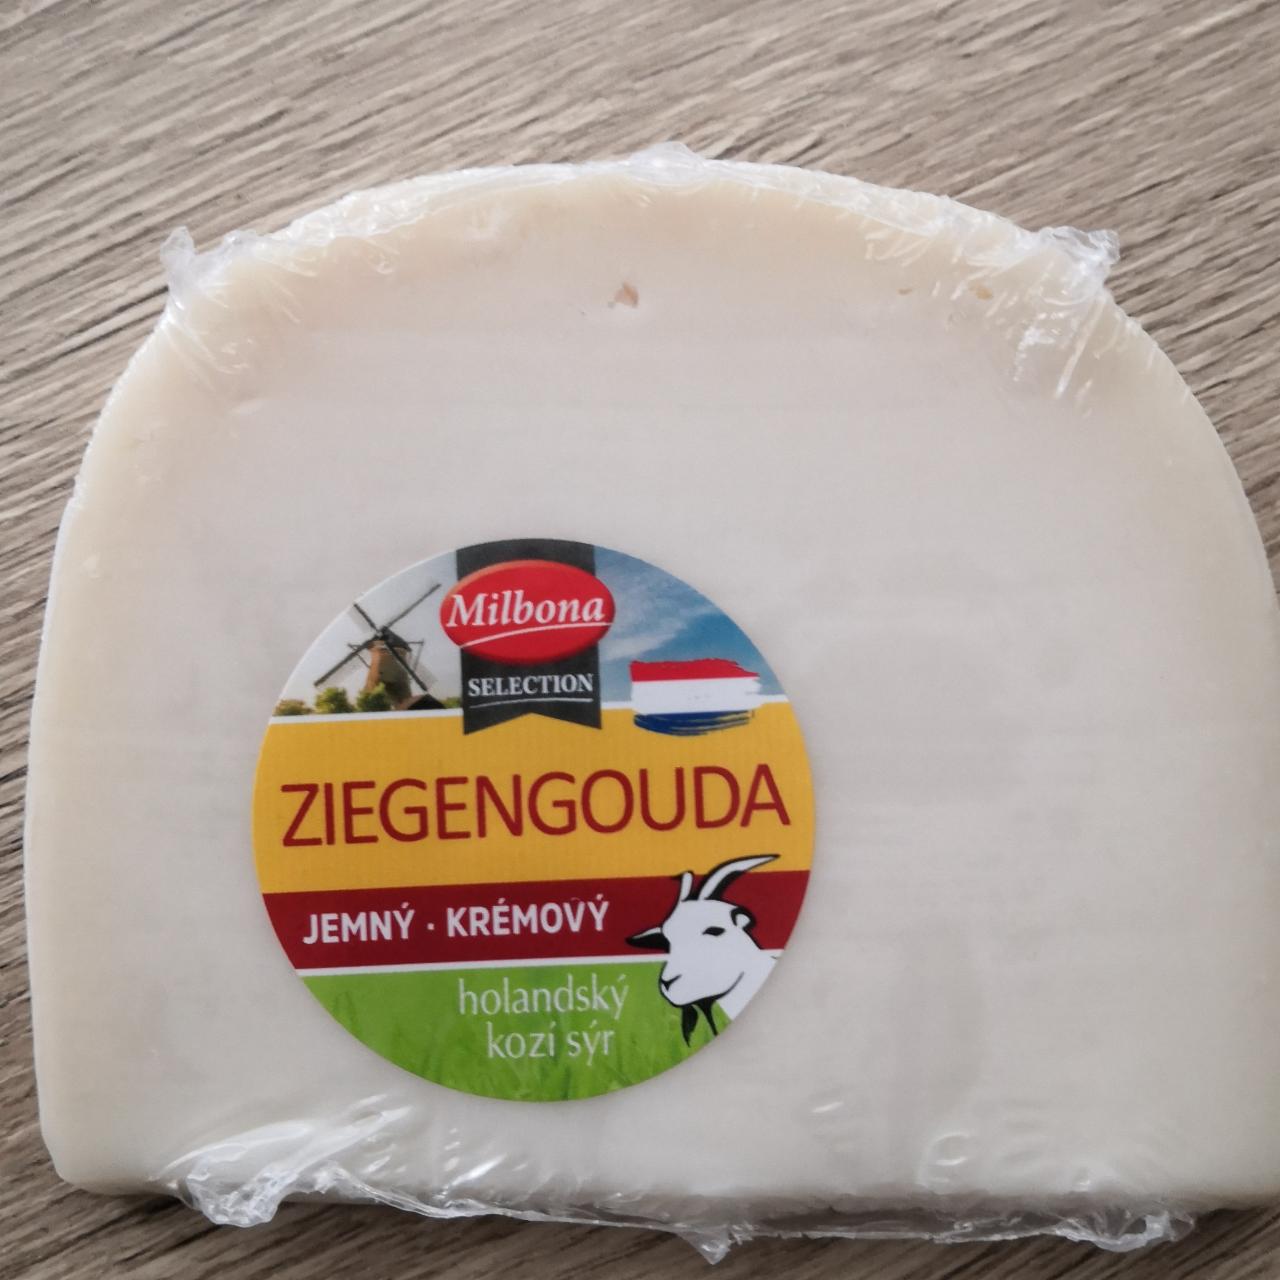 Fotografie - Ziegengouda jemný krémový holandský kozí sýr Milbona Selection